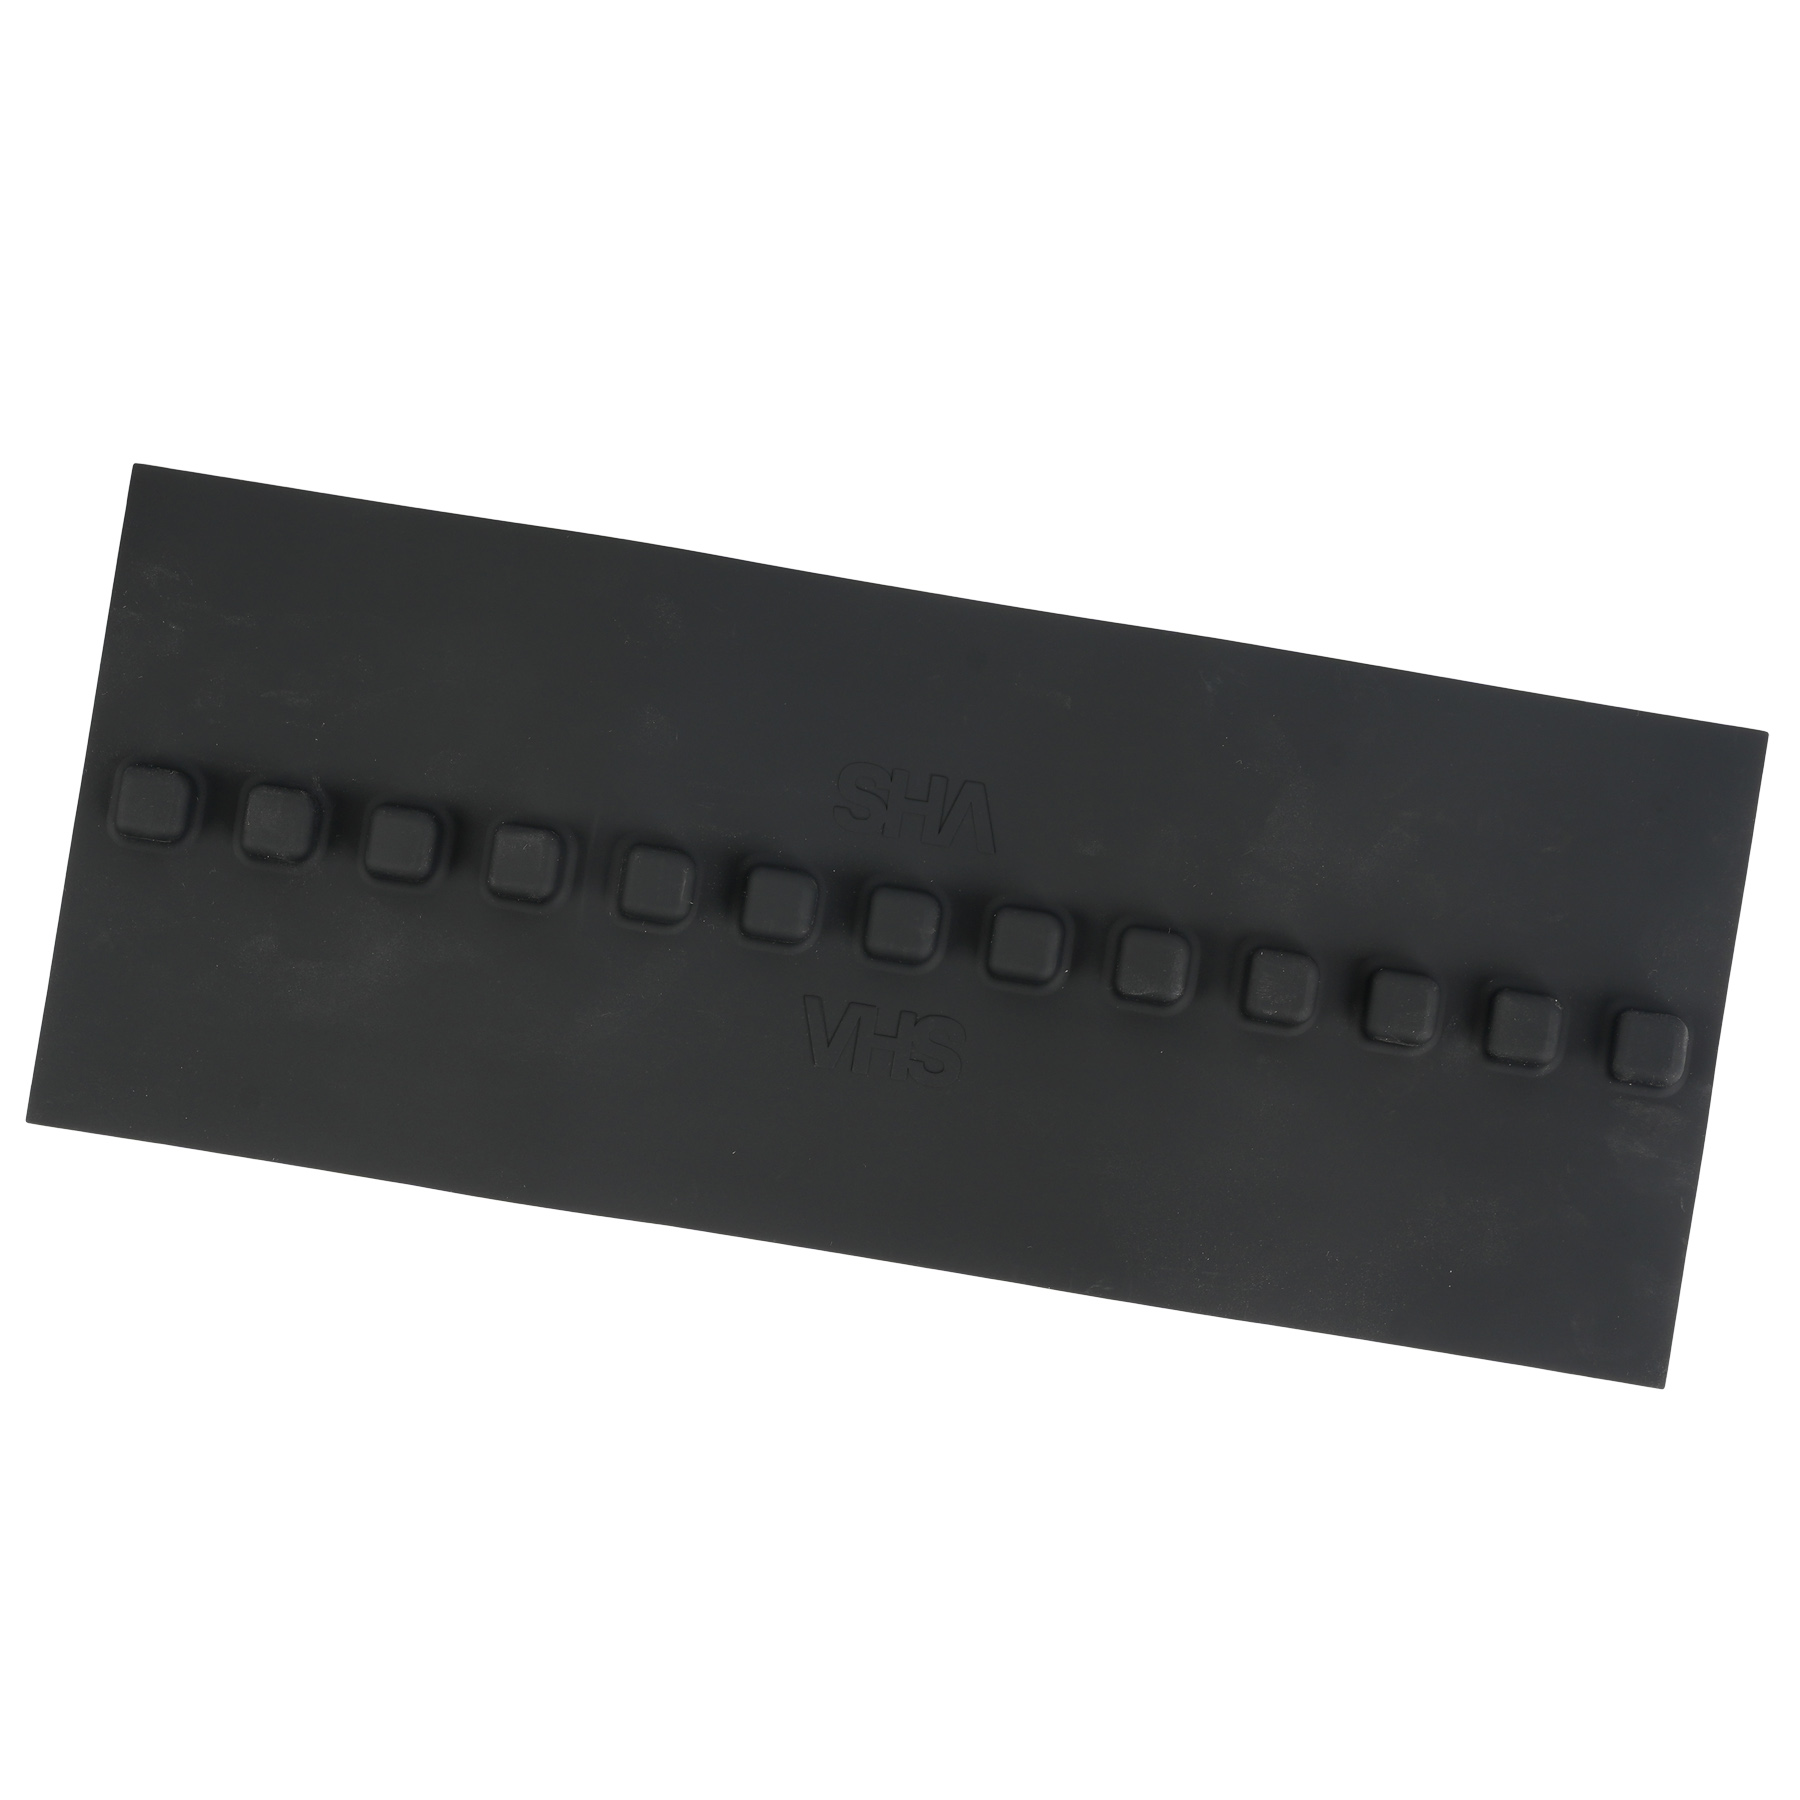 Productfoto van Velocity Hucking Systems VHS 3.0 Slapper Tape Bescherming voor Liggende Achtervork - zwart